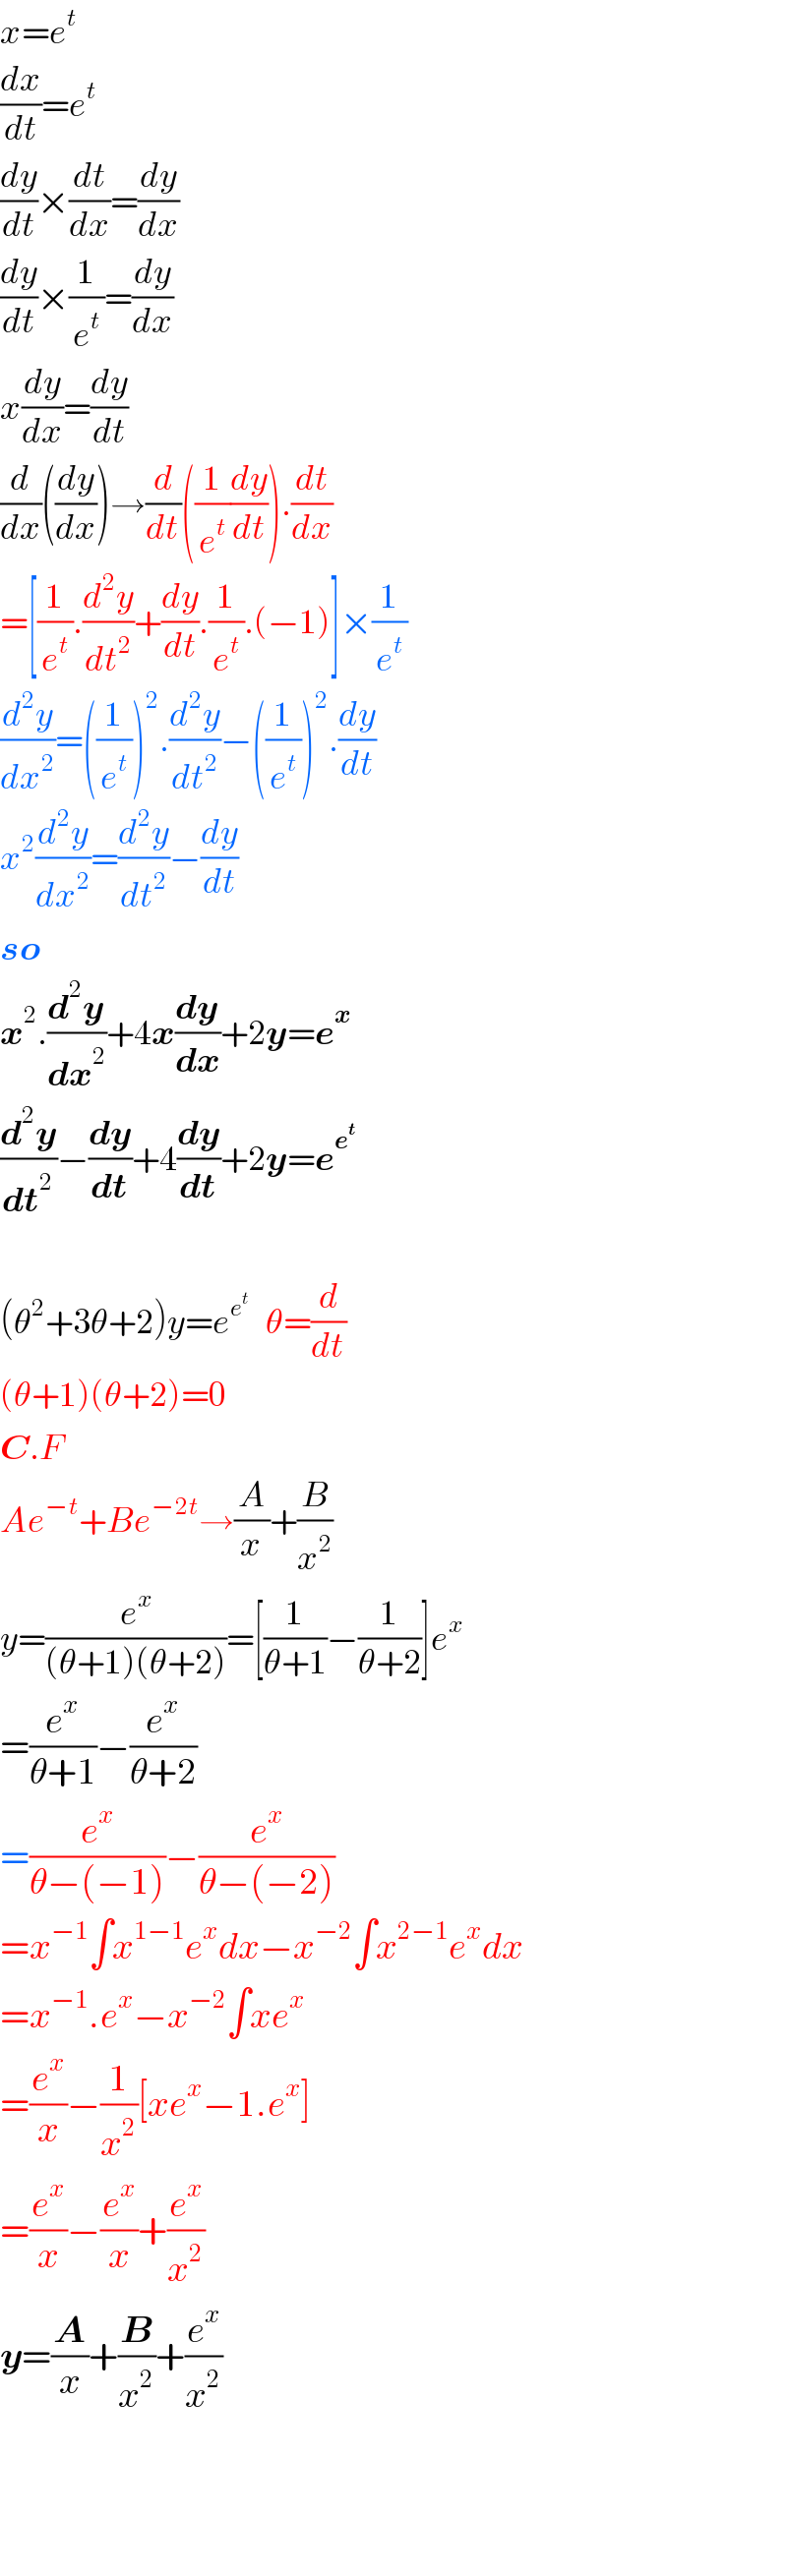 x=e^t   (dx/dt)=e^t   (dy/dt)×(dt/dx)=(dy/dx)  (dy/dt)×(1/e^t )=(dy/dx)  x(dy/dx)=(dy/dt)  (d/dx)((dy/dx))→(d/dt)((1/e^t )(dy/dt)).(dt/dx)  =[(1/e^t ).(d^2 y/dt^2 )+(dy/dt).(1/e^t ).(−1)]×(1/e^t )  (d^2 y/dx^2 )=((1/e^t ))^2 .(d^2 y/dt^2 )−((1/e^t ))^2 .(dy/dt)  x^2 (d^2 y/dx^2 )=(d^2 y/dt^2 )−(dy/dt)  so  x^2 .(d^2 y/dx^2 )+4x(dy/dx)+2y=e^x   (d^2 y/dt^2 )−(dy/dt)+4(dy/dt)+2y=e^e^t      (θ^2 +3θ+2)y=e^e^t     θ=(d/dt)  (θ+1)(θ+2)=0  C.F  Ae^(−t) +Be^(−2t) →(A/x)+(B/x^2 )  y=(e^x /((θ+1)(θ+2)))=[(1/(θ+1))−(1/(θ+2))]e^x   =(e^x /(θ+1))−(e^x /(θ+2))  =(e^x /(θ−(−1)))−(e^x /(θ−(−2)))  =x^(−1) ∫x^(1−1) e^x dx−x^(−2) ∫x^(2−1) e^x dx  =x^(−1) .e^x −x^(−2) ∫xe^x   =(e^x /x)−(1/x^2 )[xe^x −1.e^x ]  =(e^x /x)−(e^x /x)+(e^x /x^2 )  y=(A/x)+(B/x^2 )+(e^x /x^2 )      